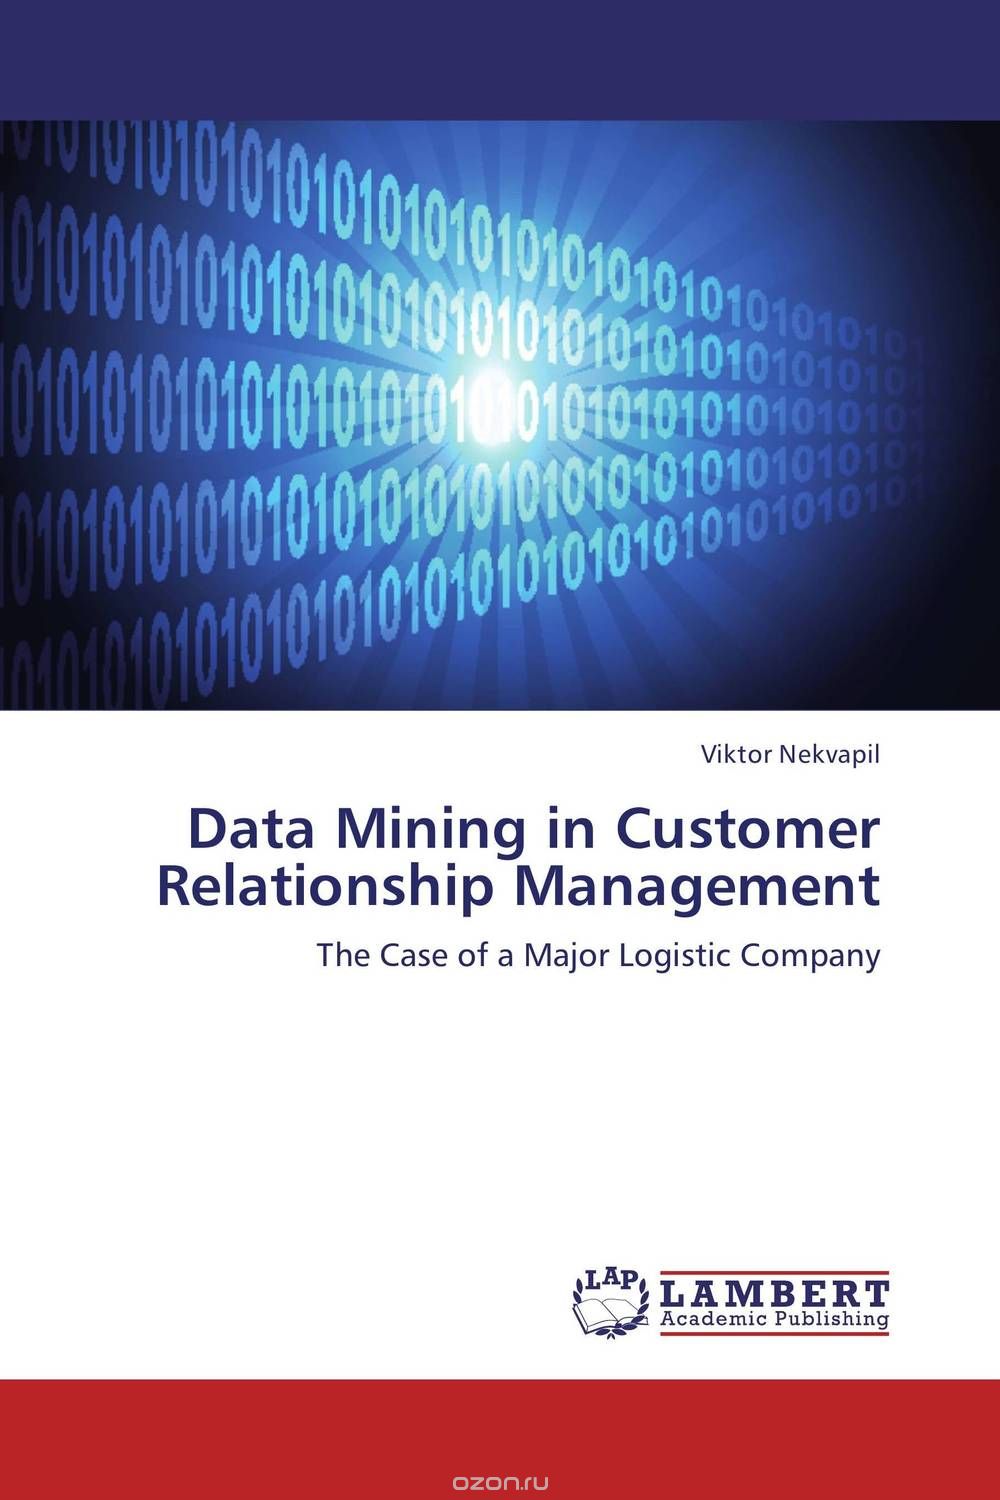 Скачать книгу "Data Mining in Customer Relationship Management"